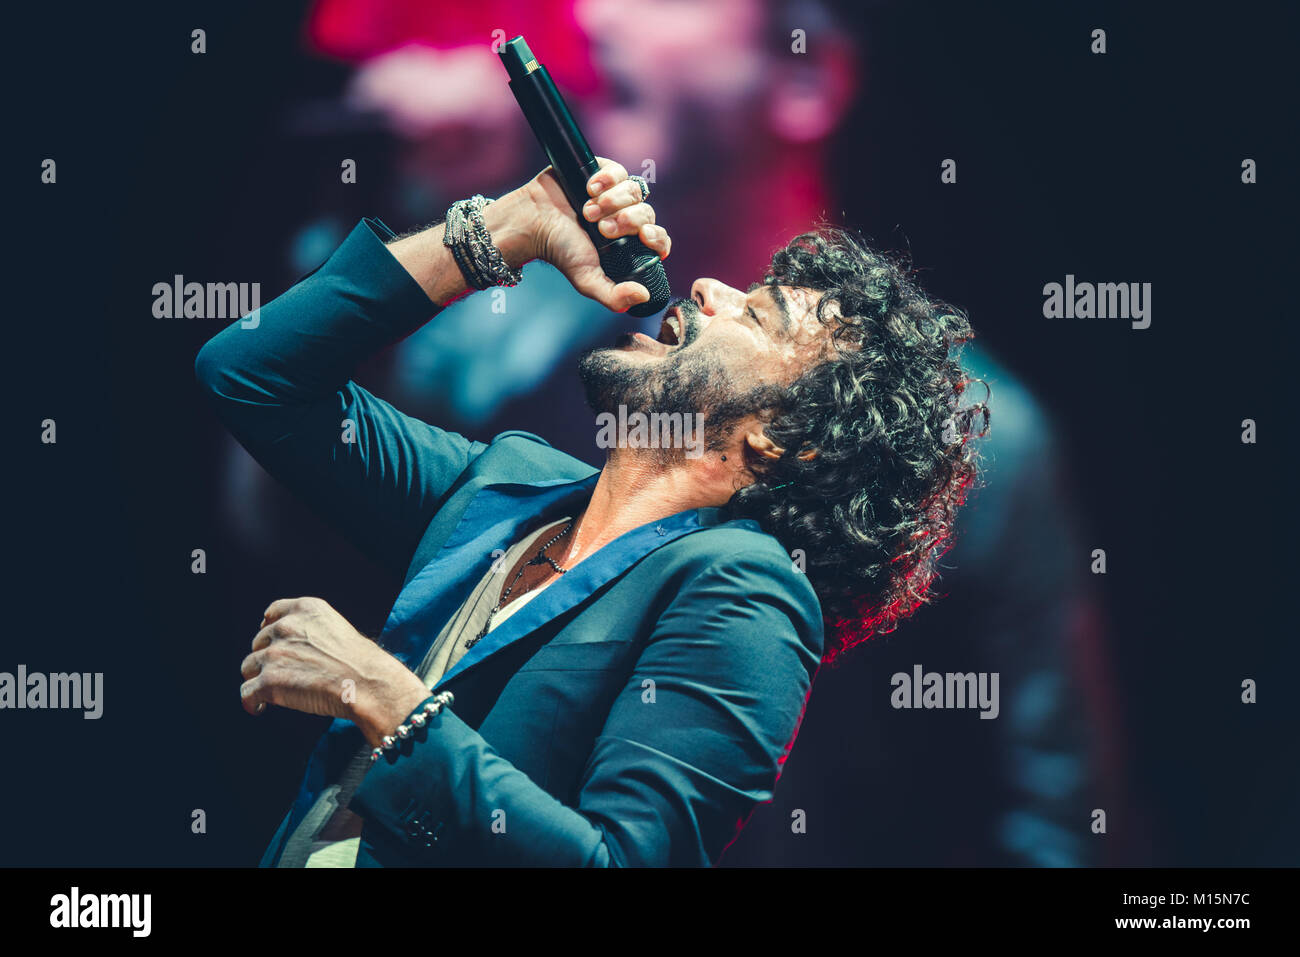 Italian pop singer -Fotos und -Bildmaterial in hoher Auflösung - Seite 3 -  Alamy